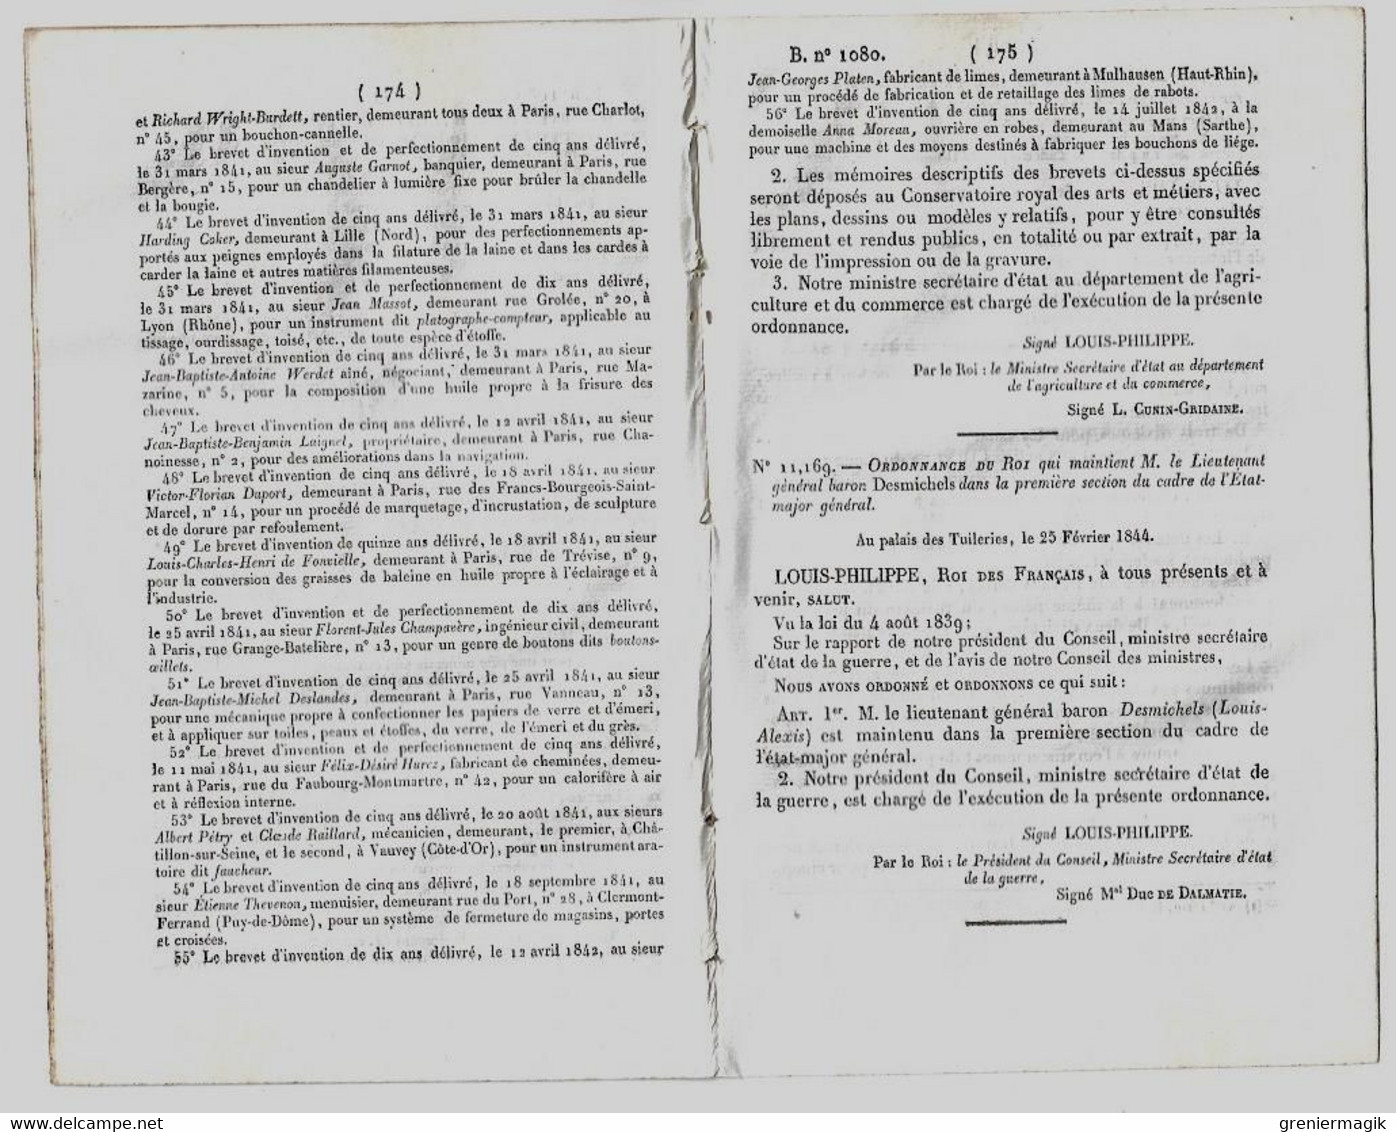 Bulletin Des Lois 1080 1844 Brevets D'invention (Peugeot Frères Hérimoncourt (Doubs)...)/Desmichels/Condamnés Détenus - Décrets & Lois